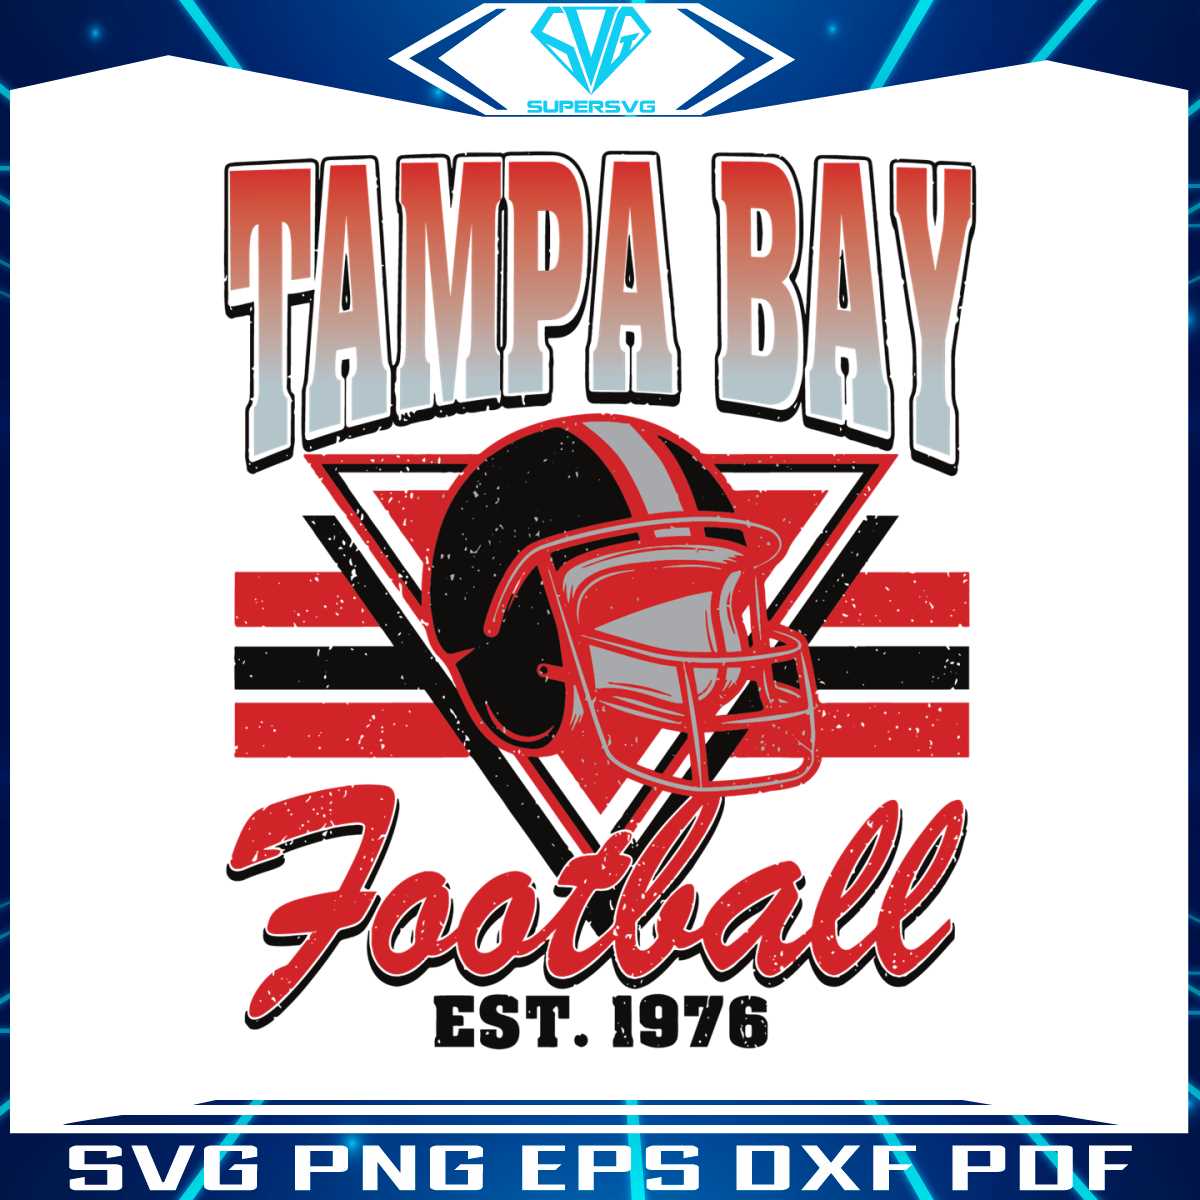 tampa-bay-football-est-1976-logo-svg